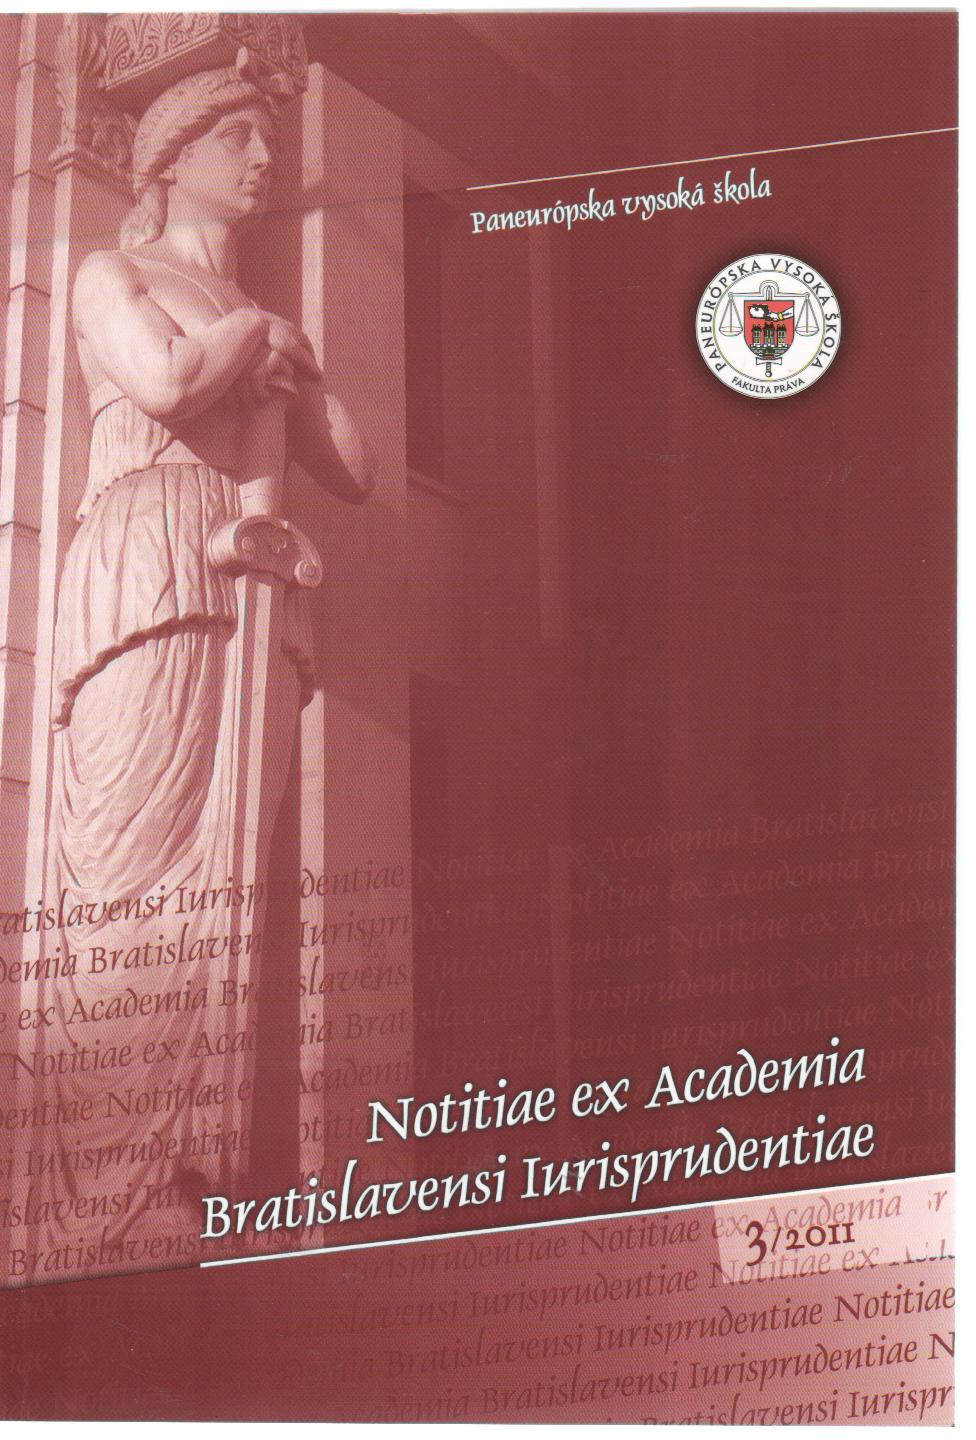 Notitiae ex Academia Bratislavensi Iurisprudentiae 3/2011